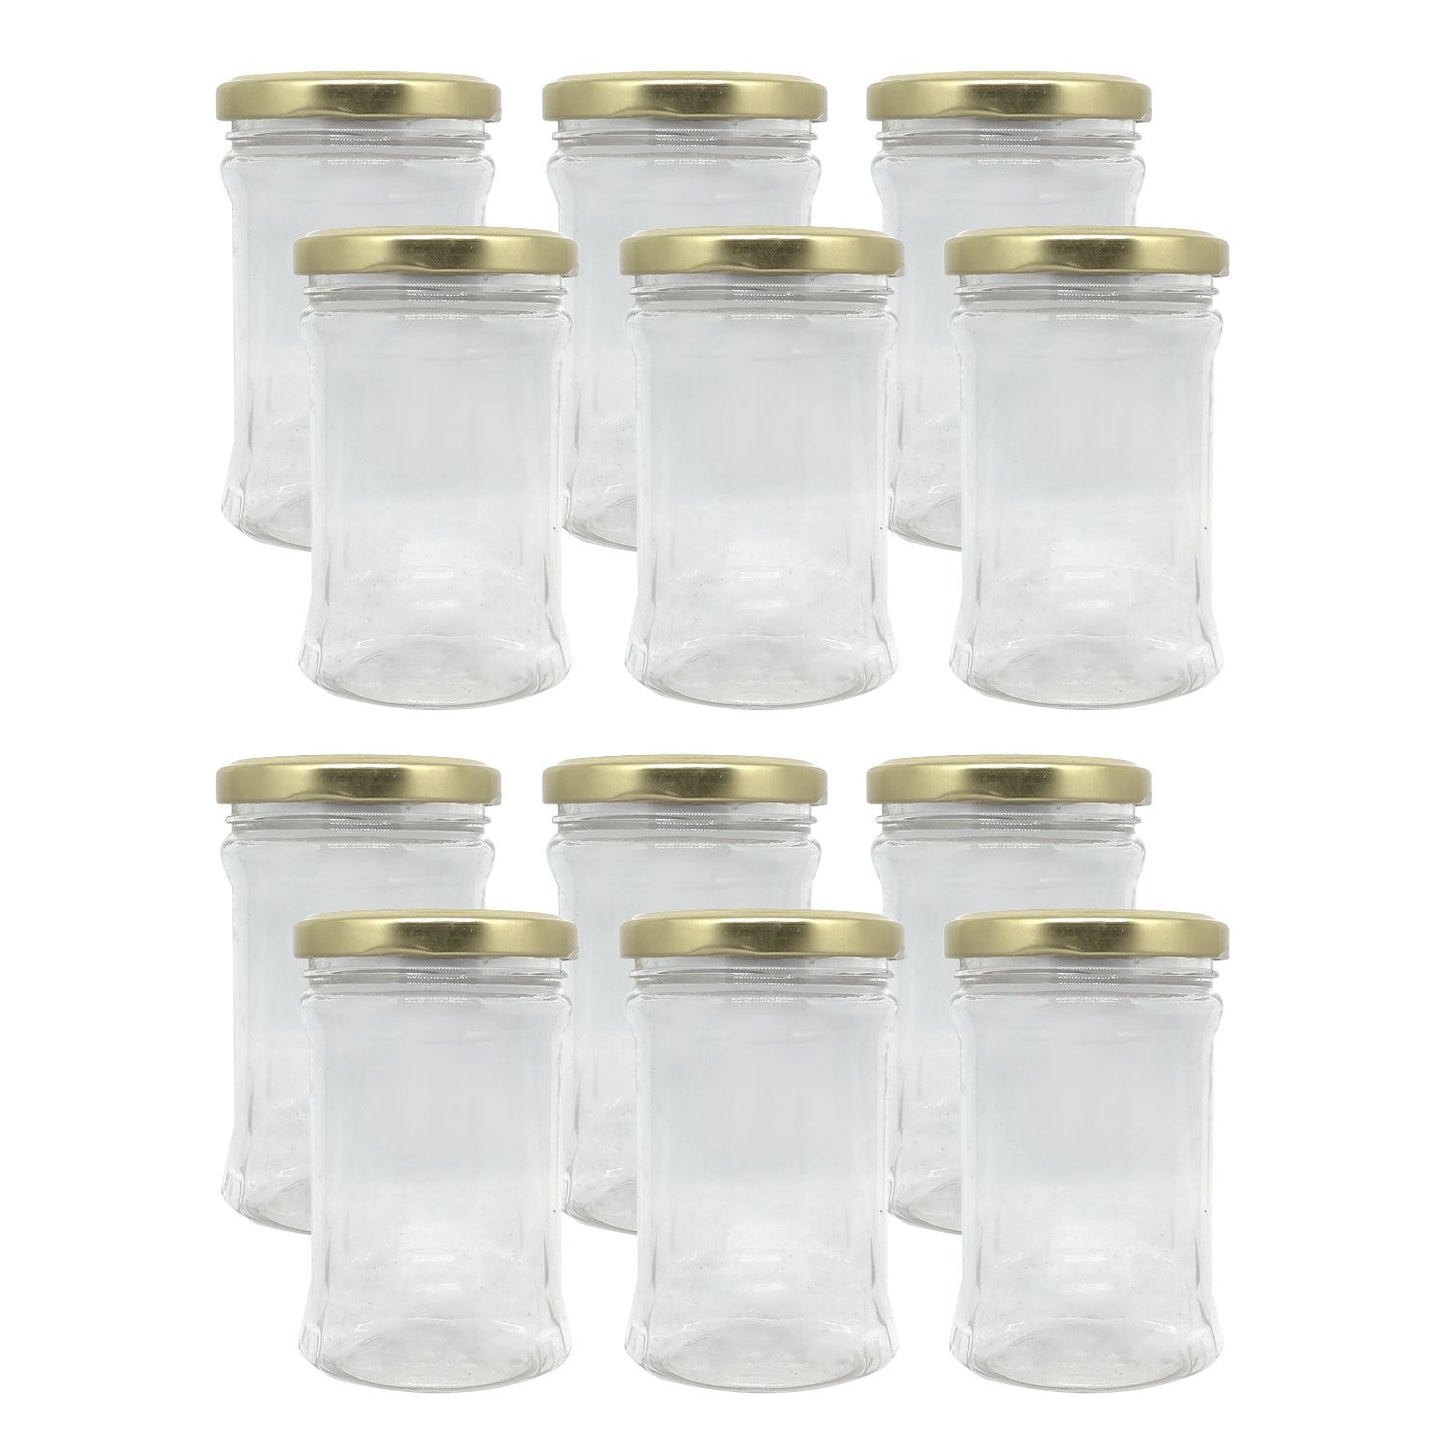 Puramio 250ml Pet Jar with Golden Metal Cap - Set of 12